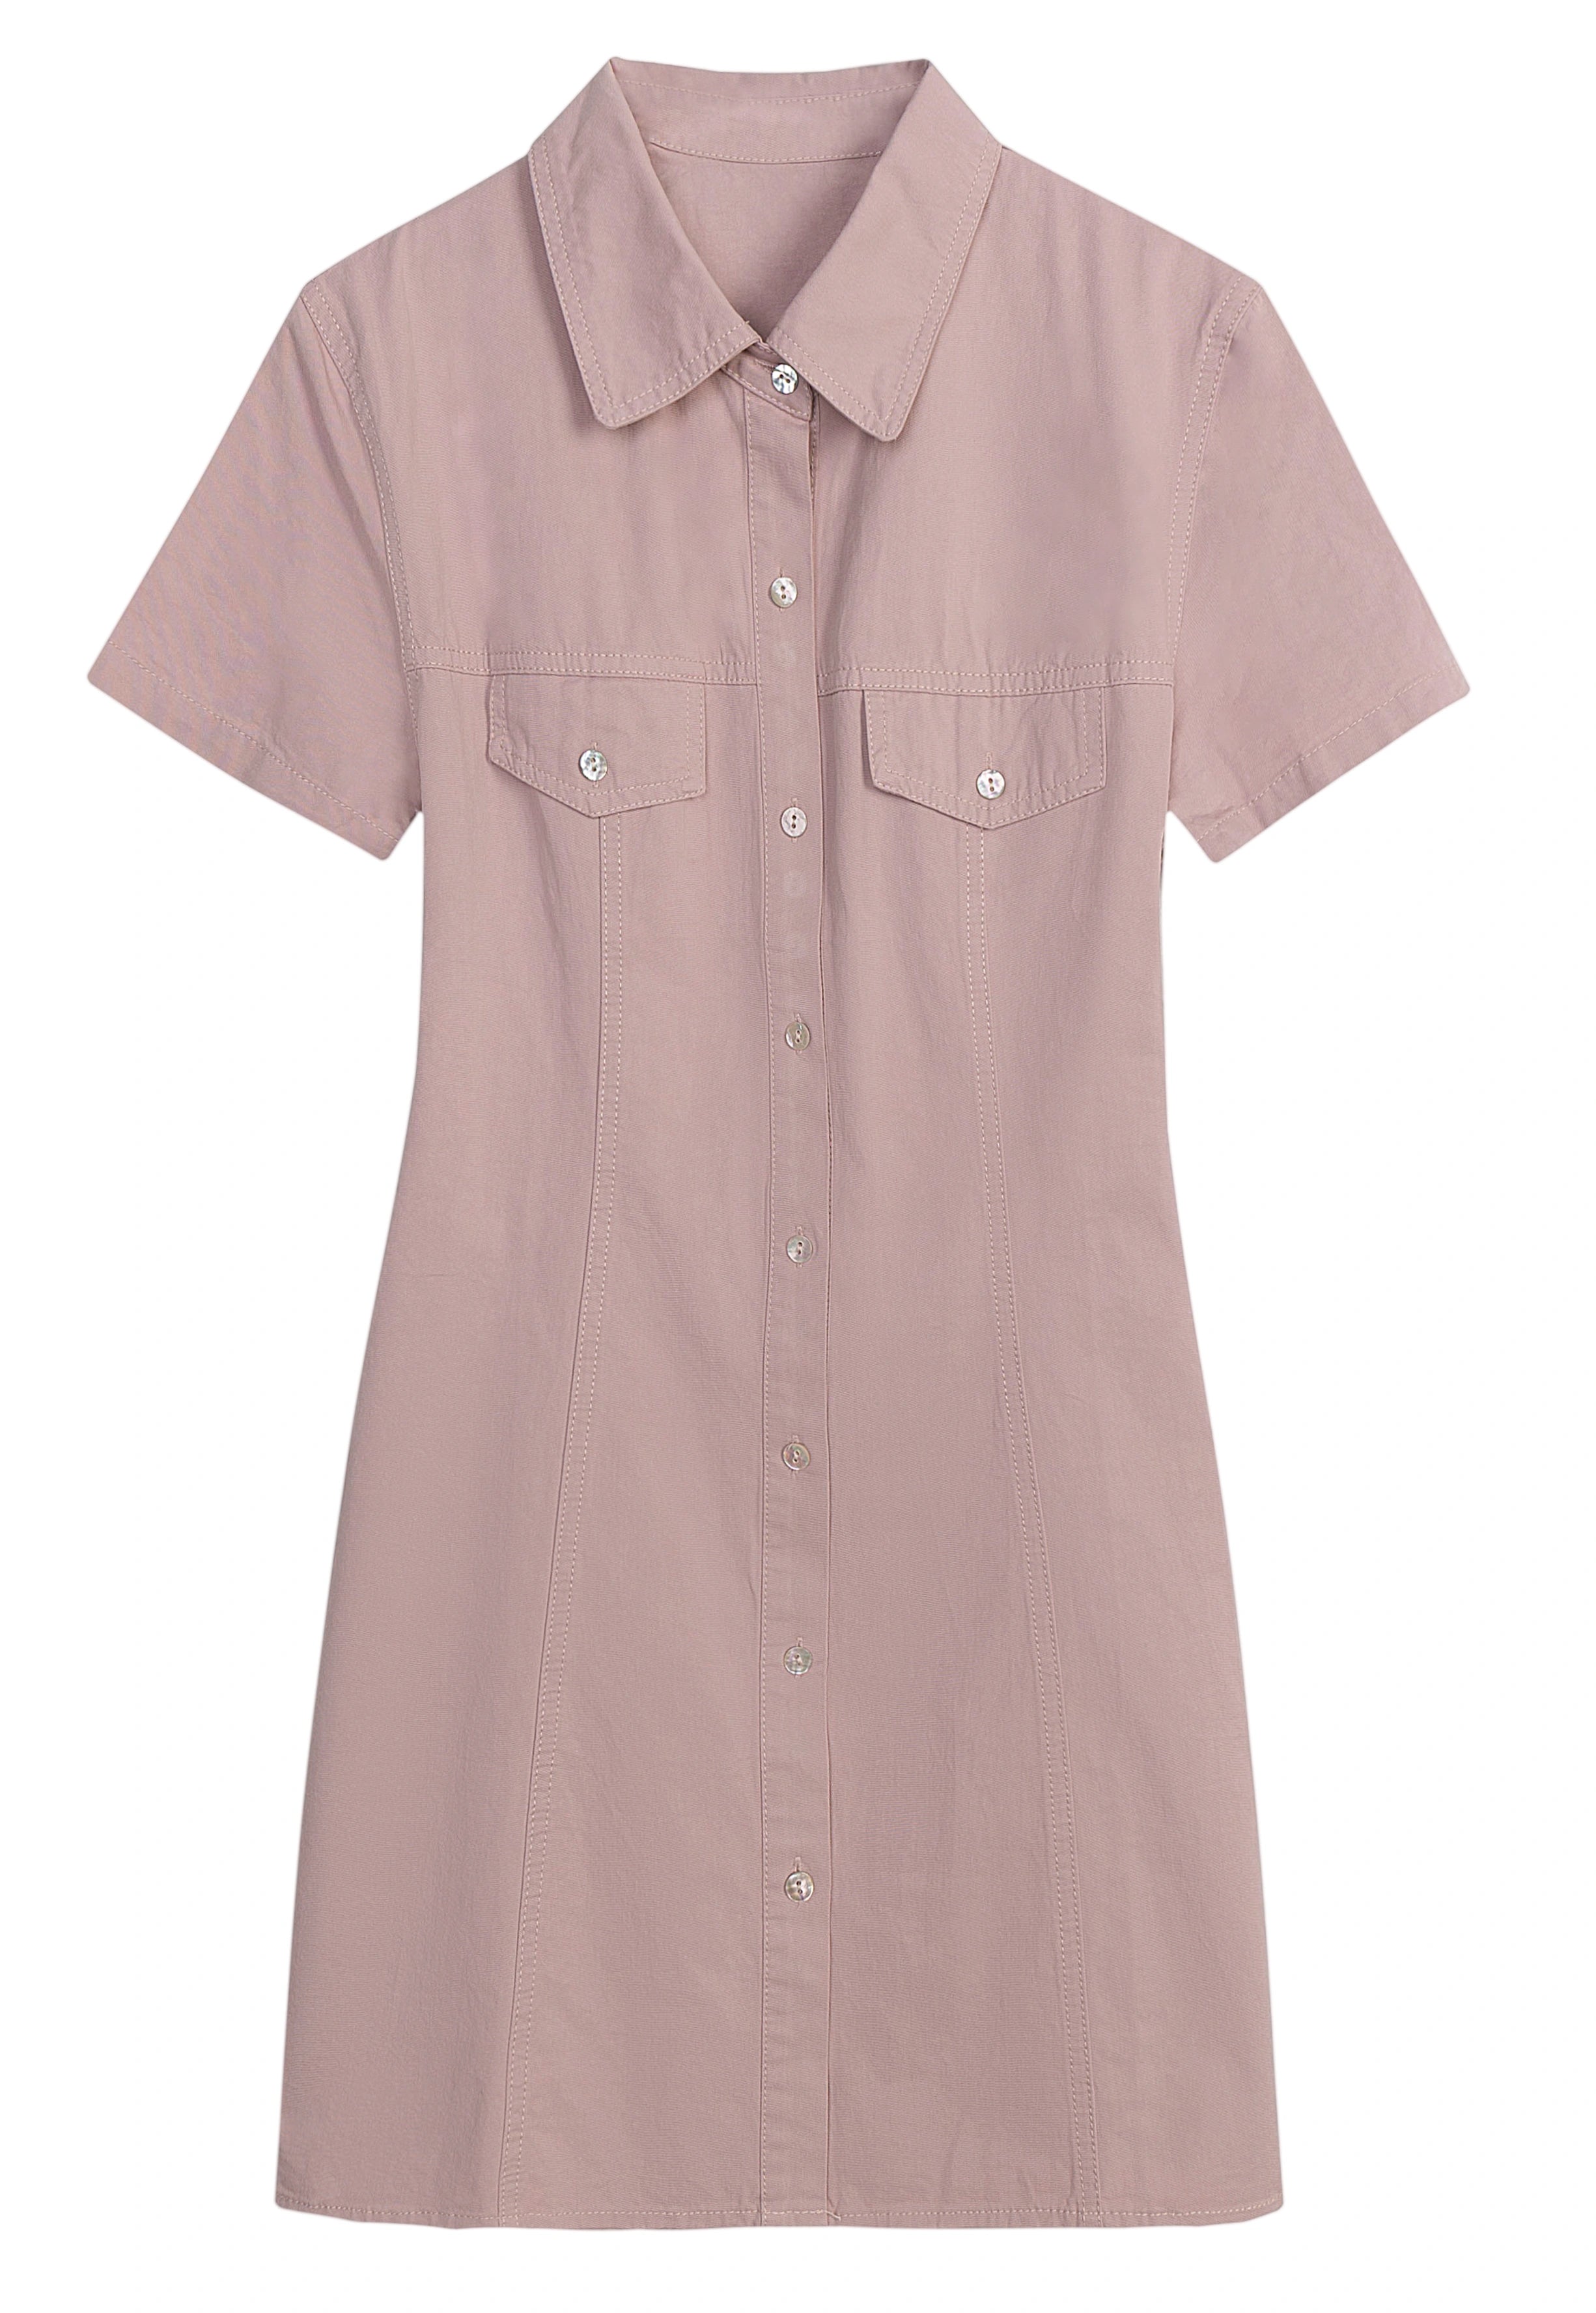 Women's Short Sleeve Button-Down Shirt Dress with Pockets